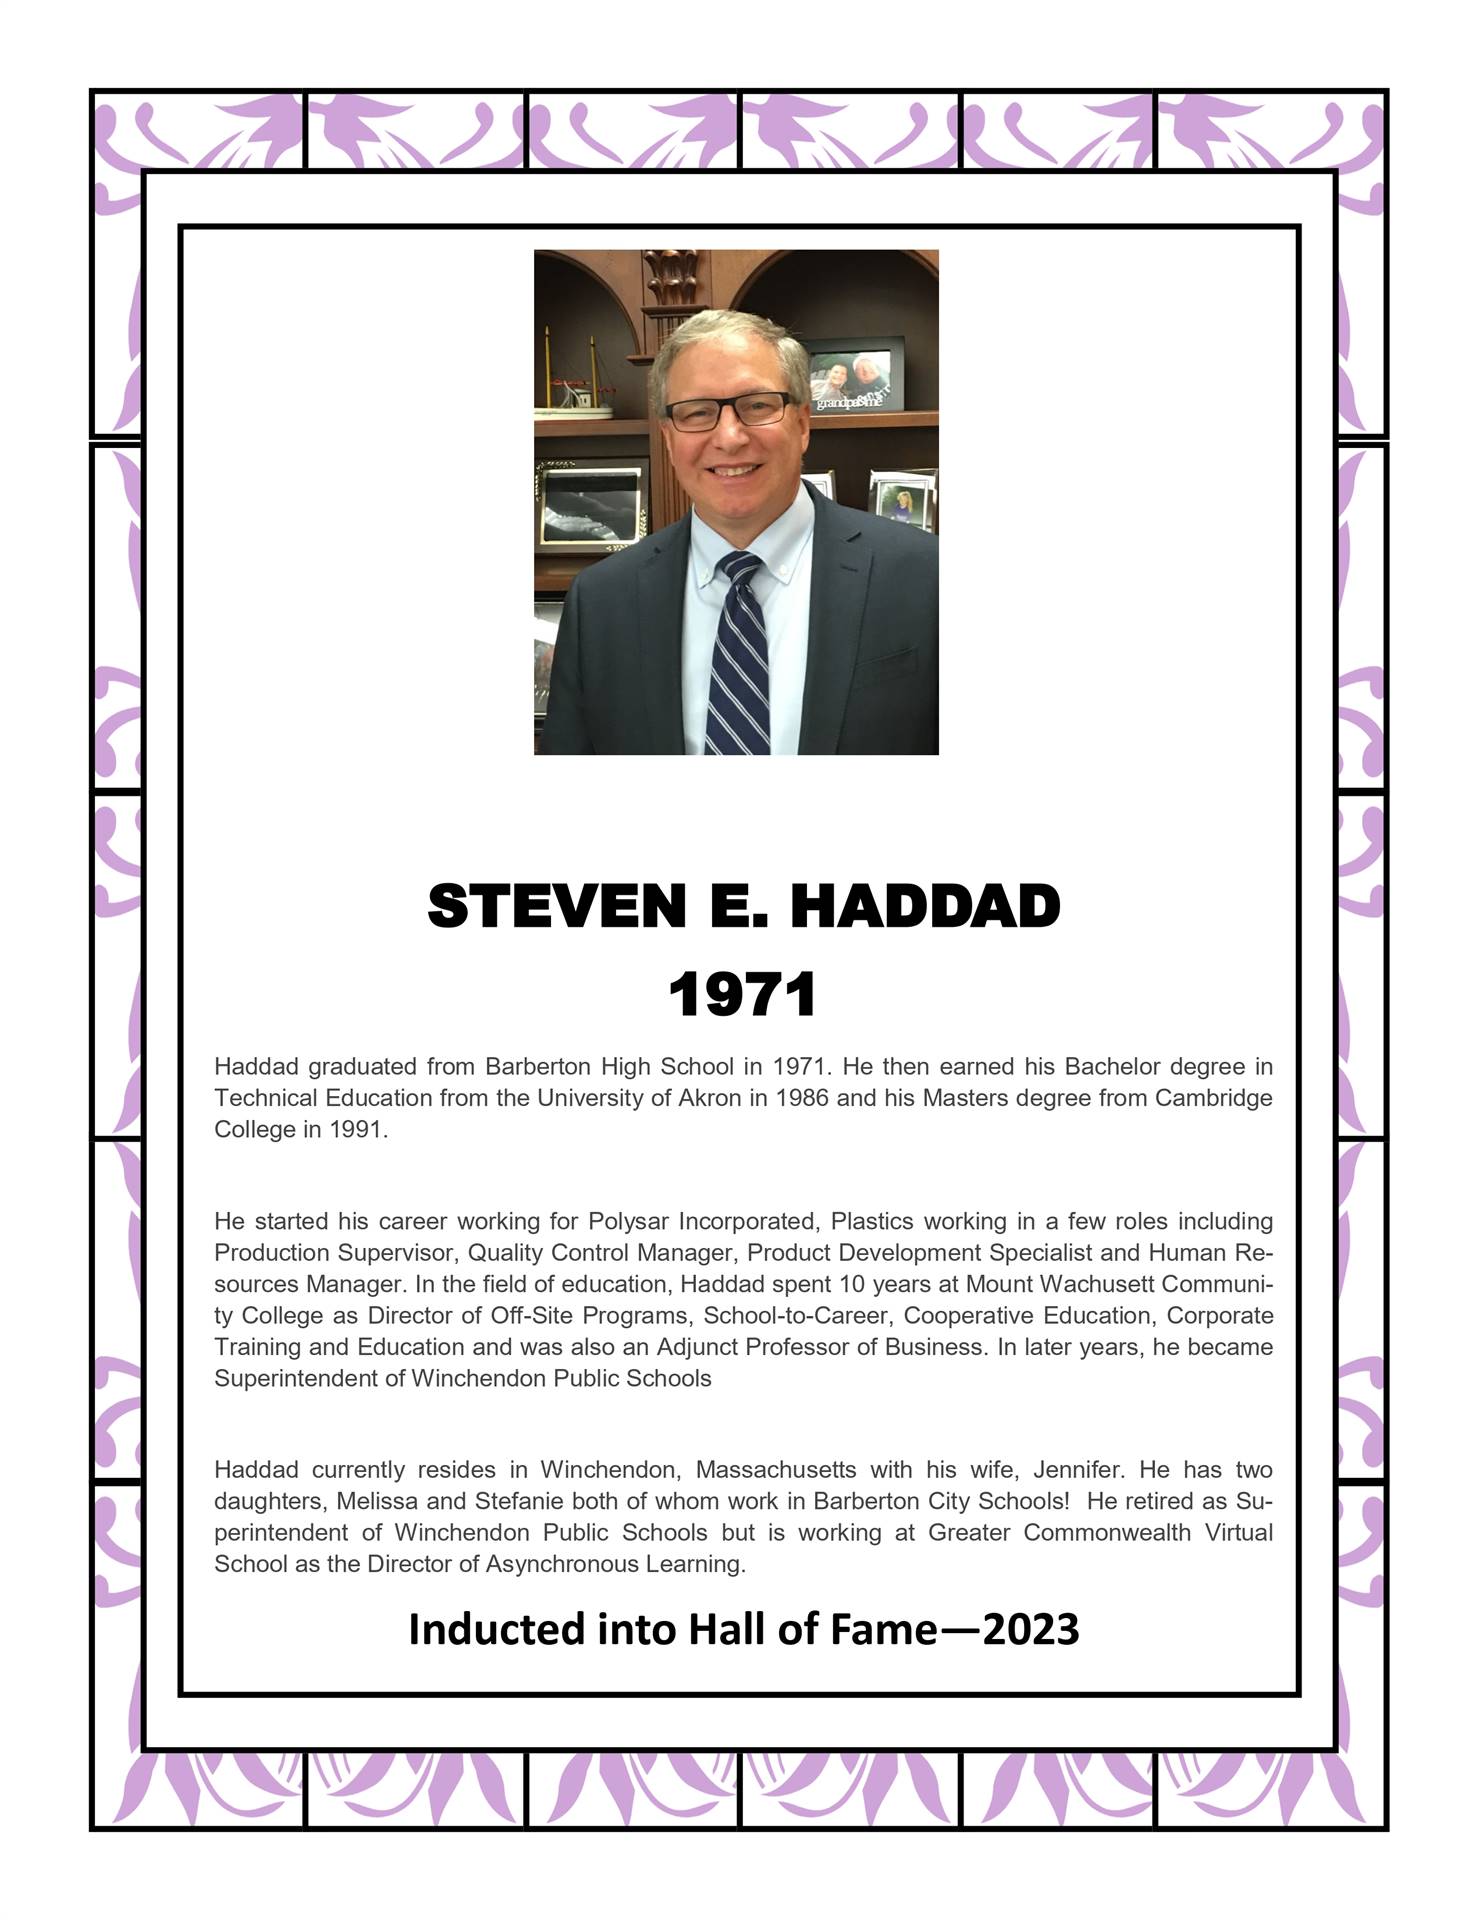 Steven E. Haddad